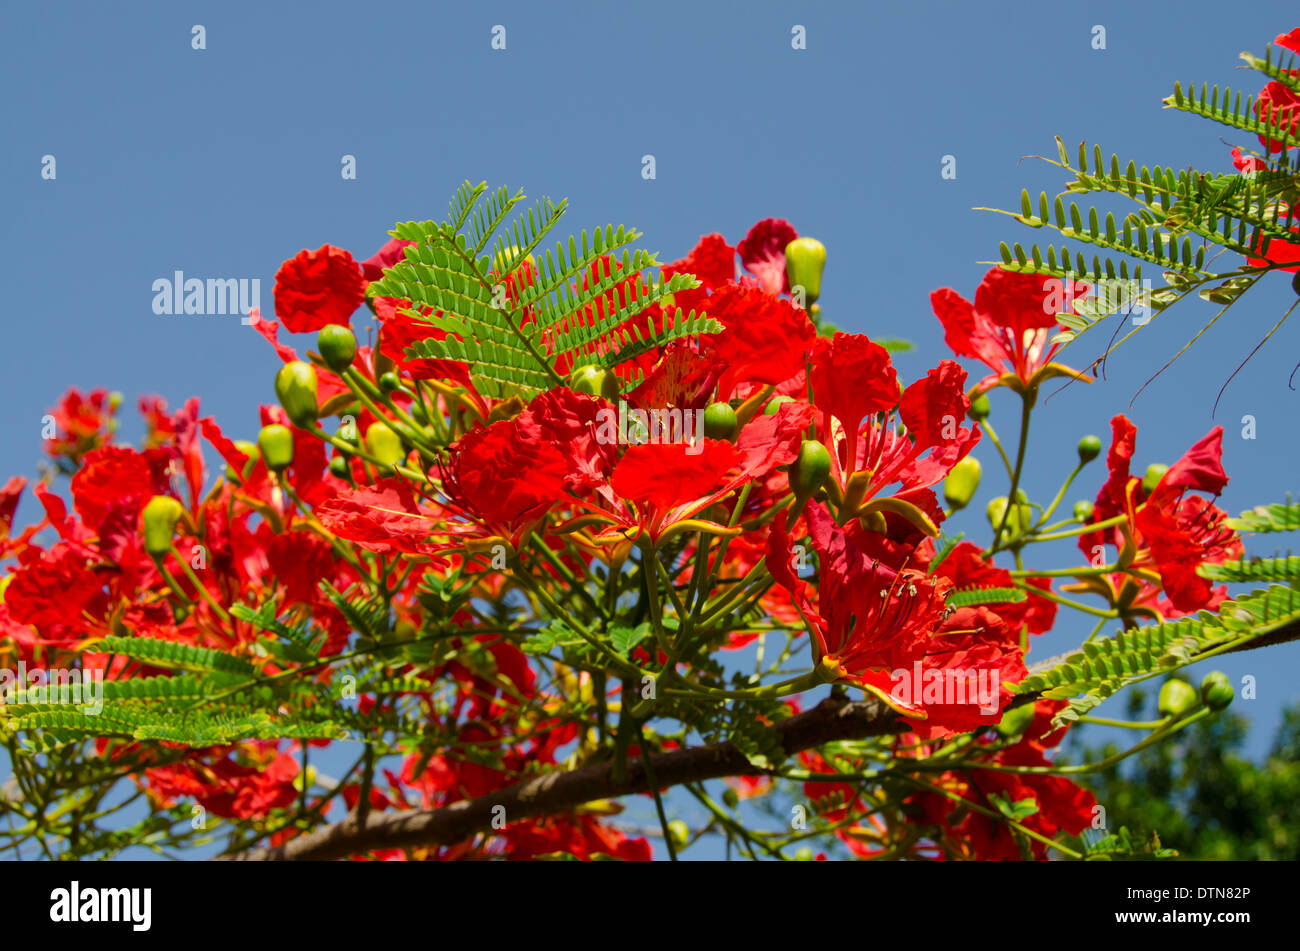 Guyane, Iles du salut. L'île Royale, accueil d'infâme colonie pénitentiaire. Île colorée Praça flamboyant arbre en fleur. Banque D'Images